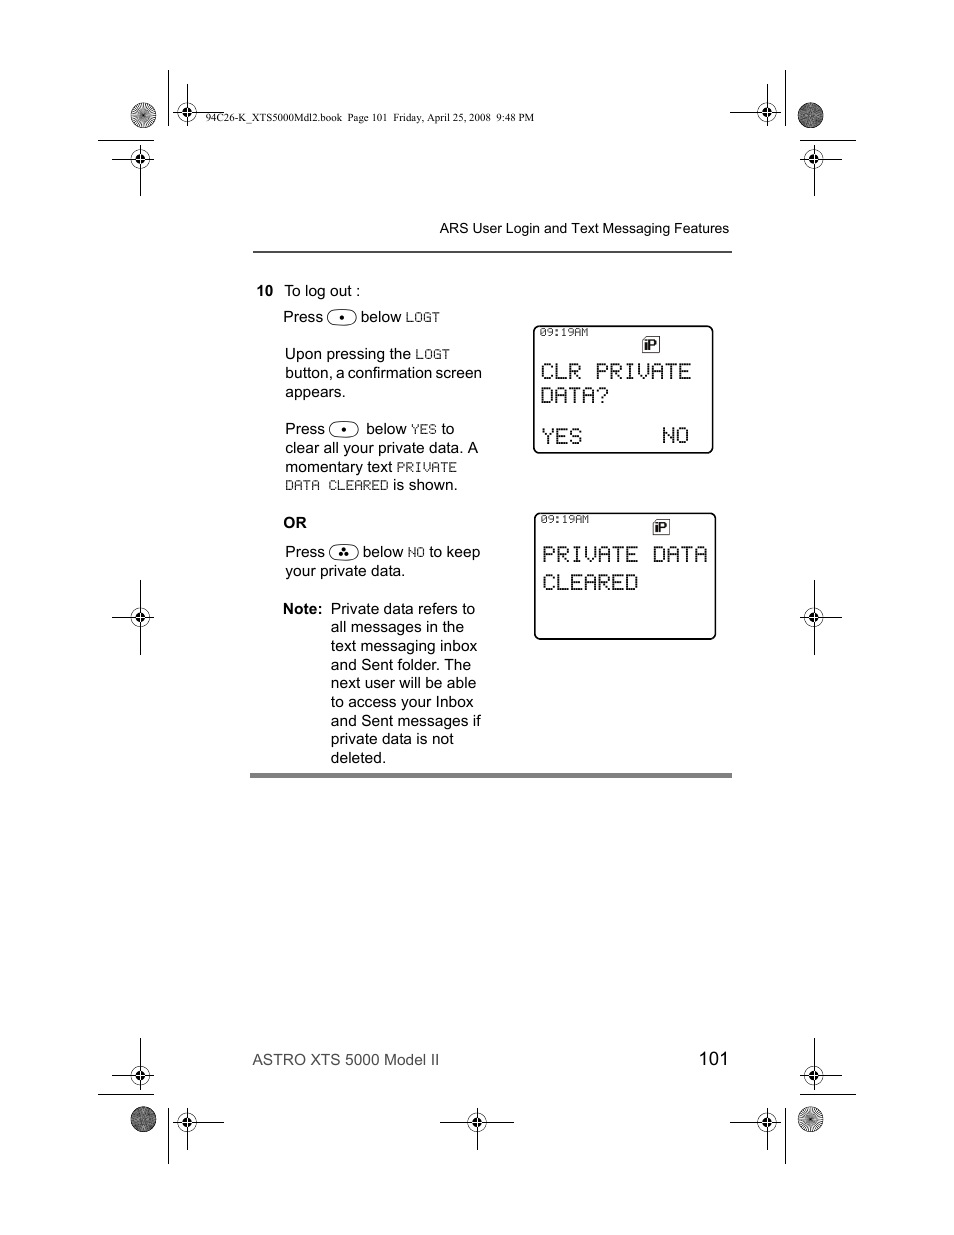 Clr private data? no, Private data cleared | Nikon ASTRO XTS-5000 User Manual | Page 114 / 163